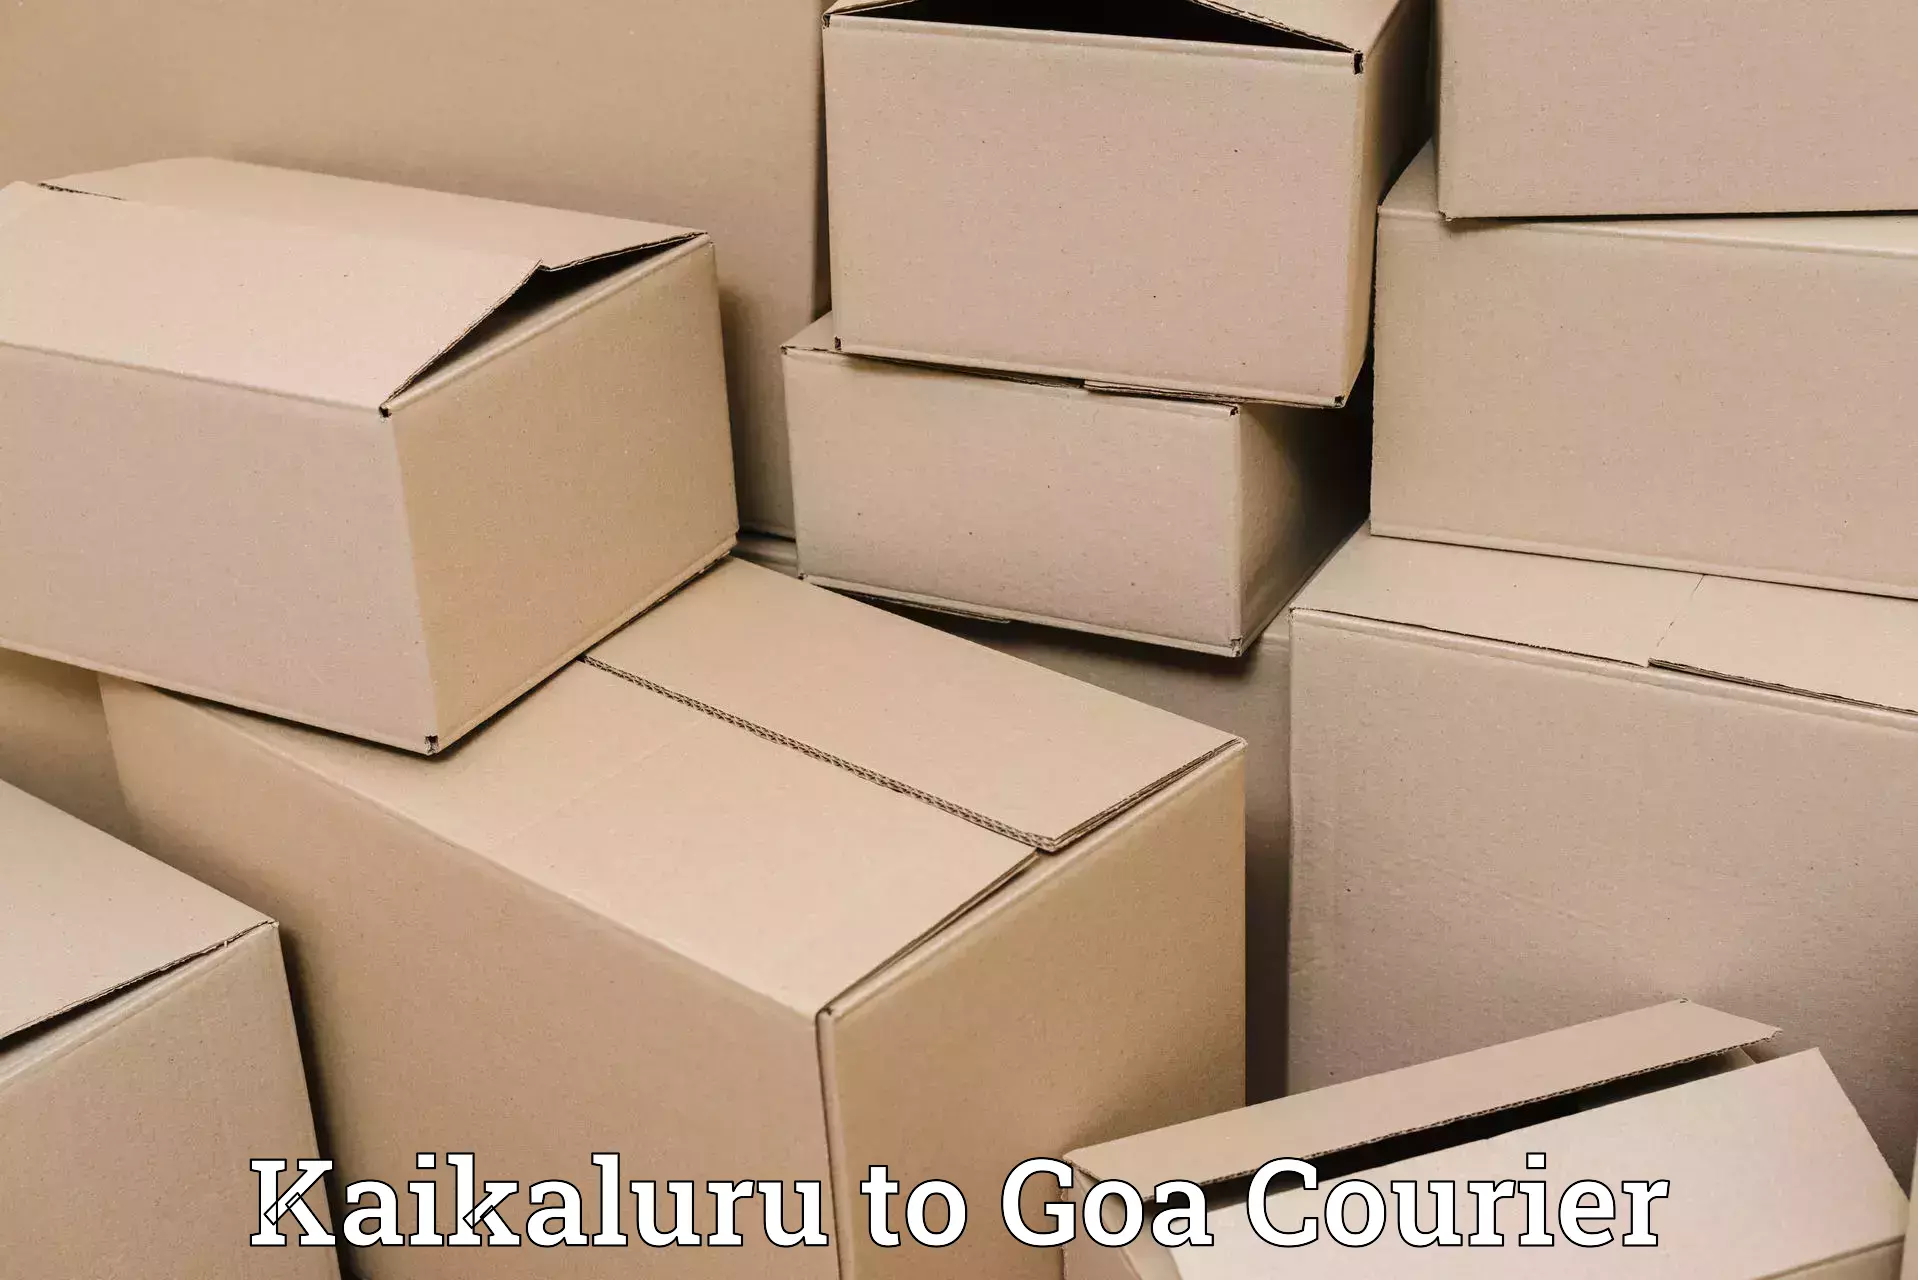 Optimized shipping routes Kaikaluru to Goa University